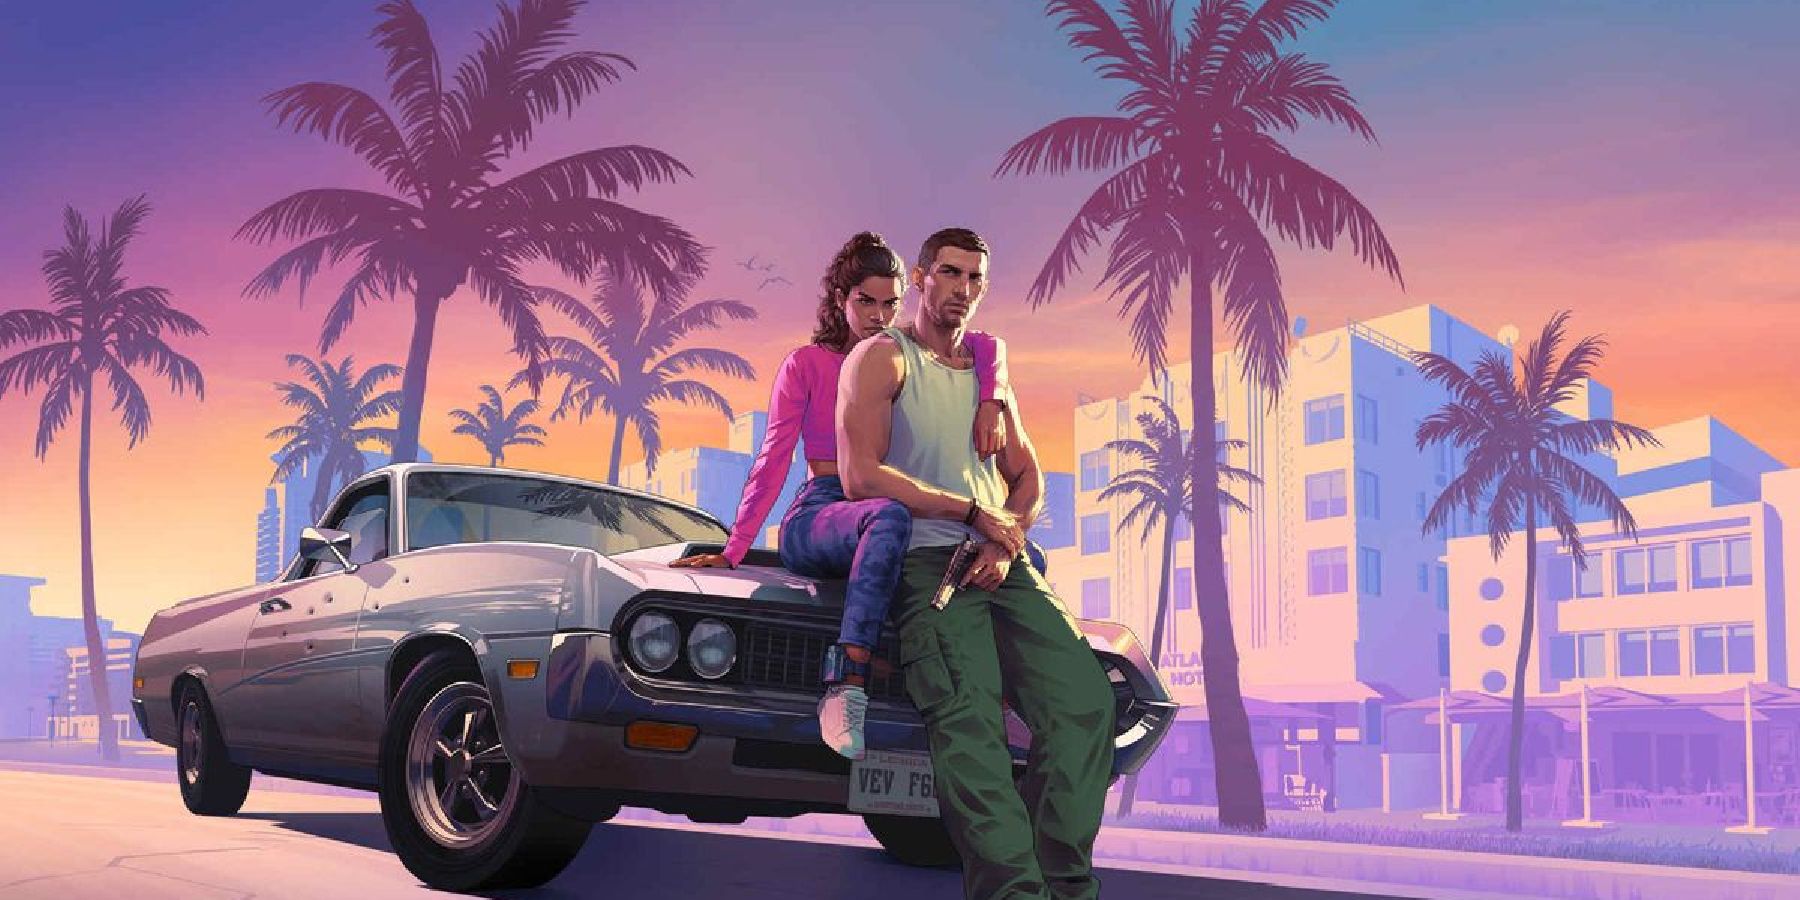 La rumeur d’un flic infiltré de Grand Theft Auto 6 pourrait signifier une reprise des fins de GTA 5